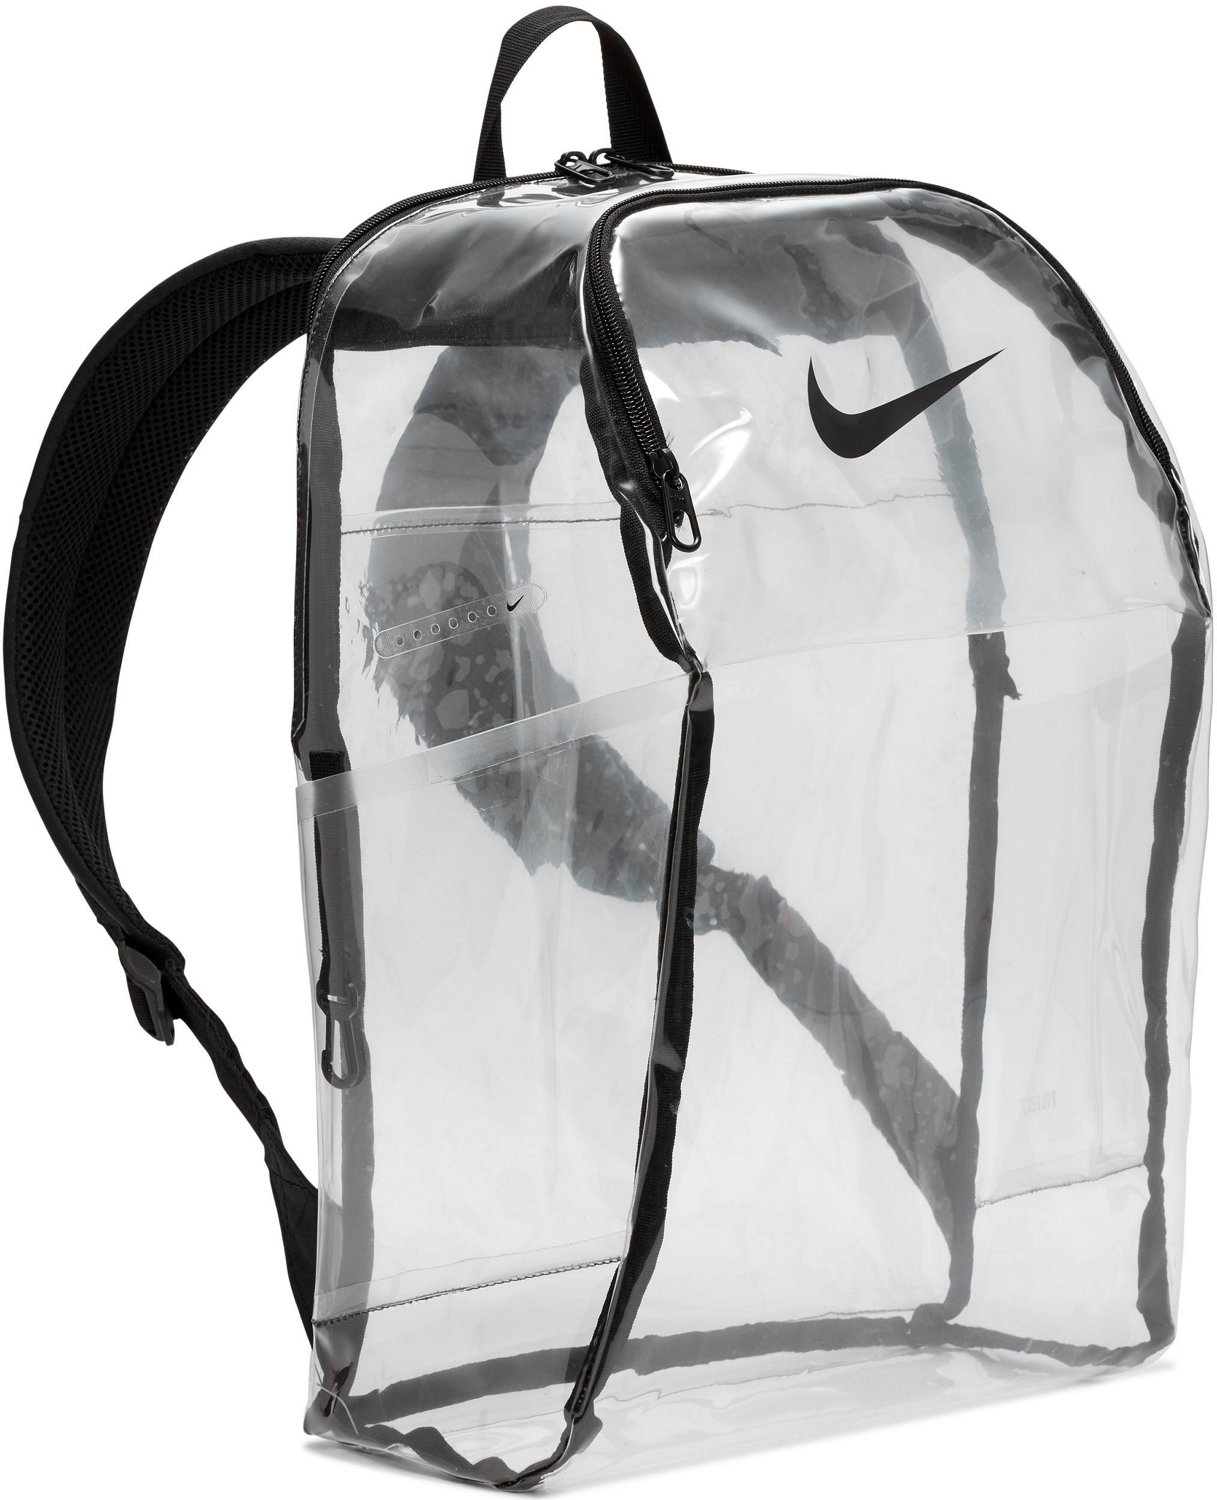 academy sports nike mesh backpack